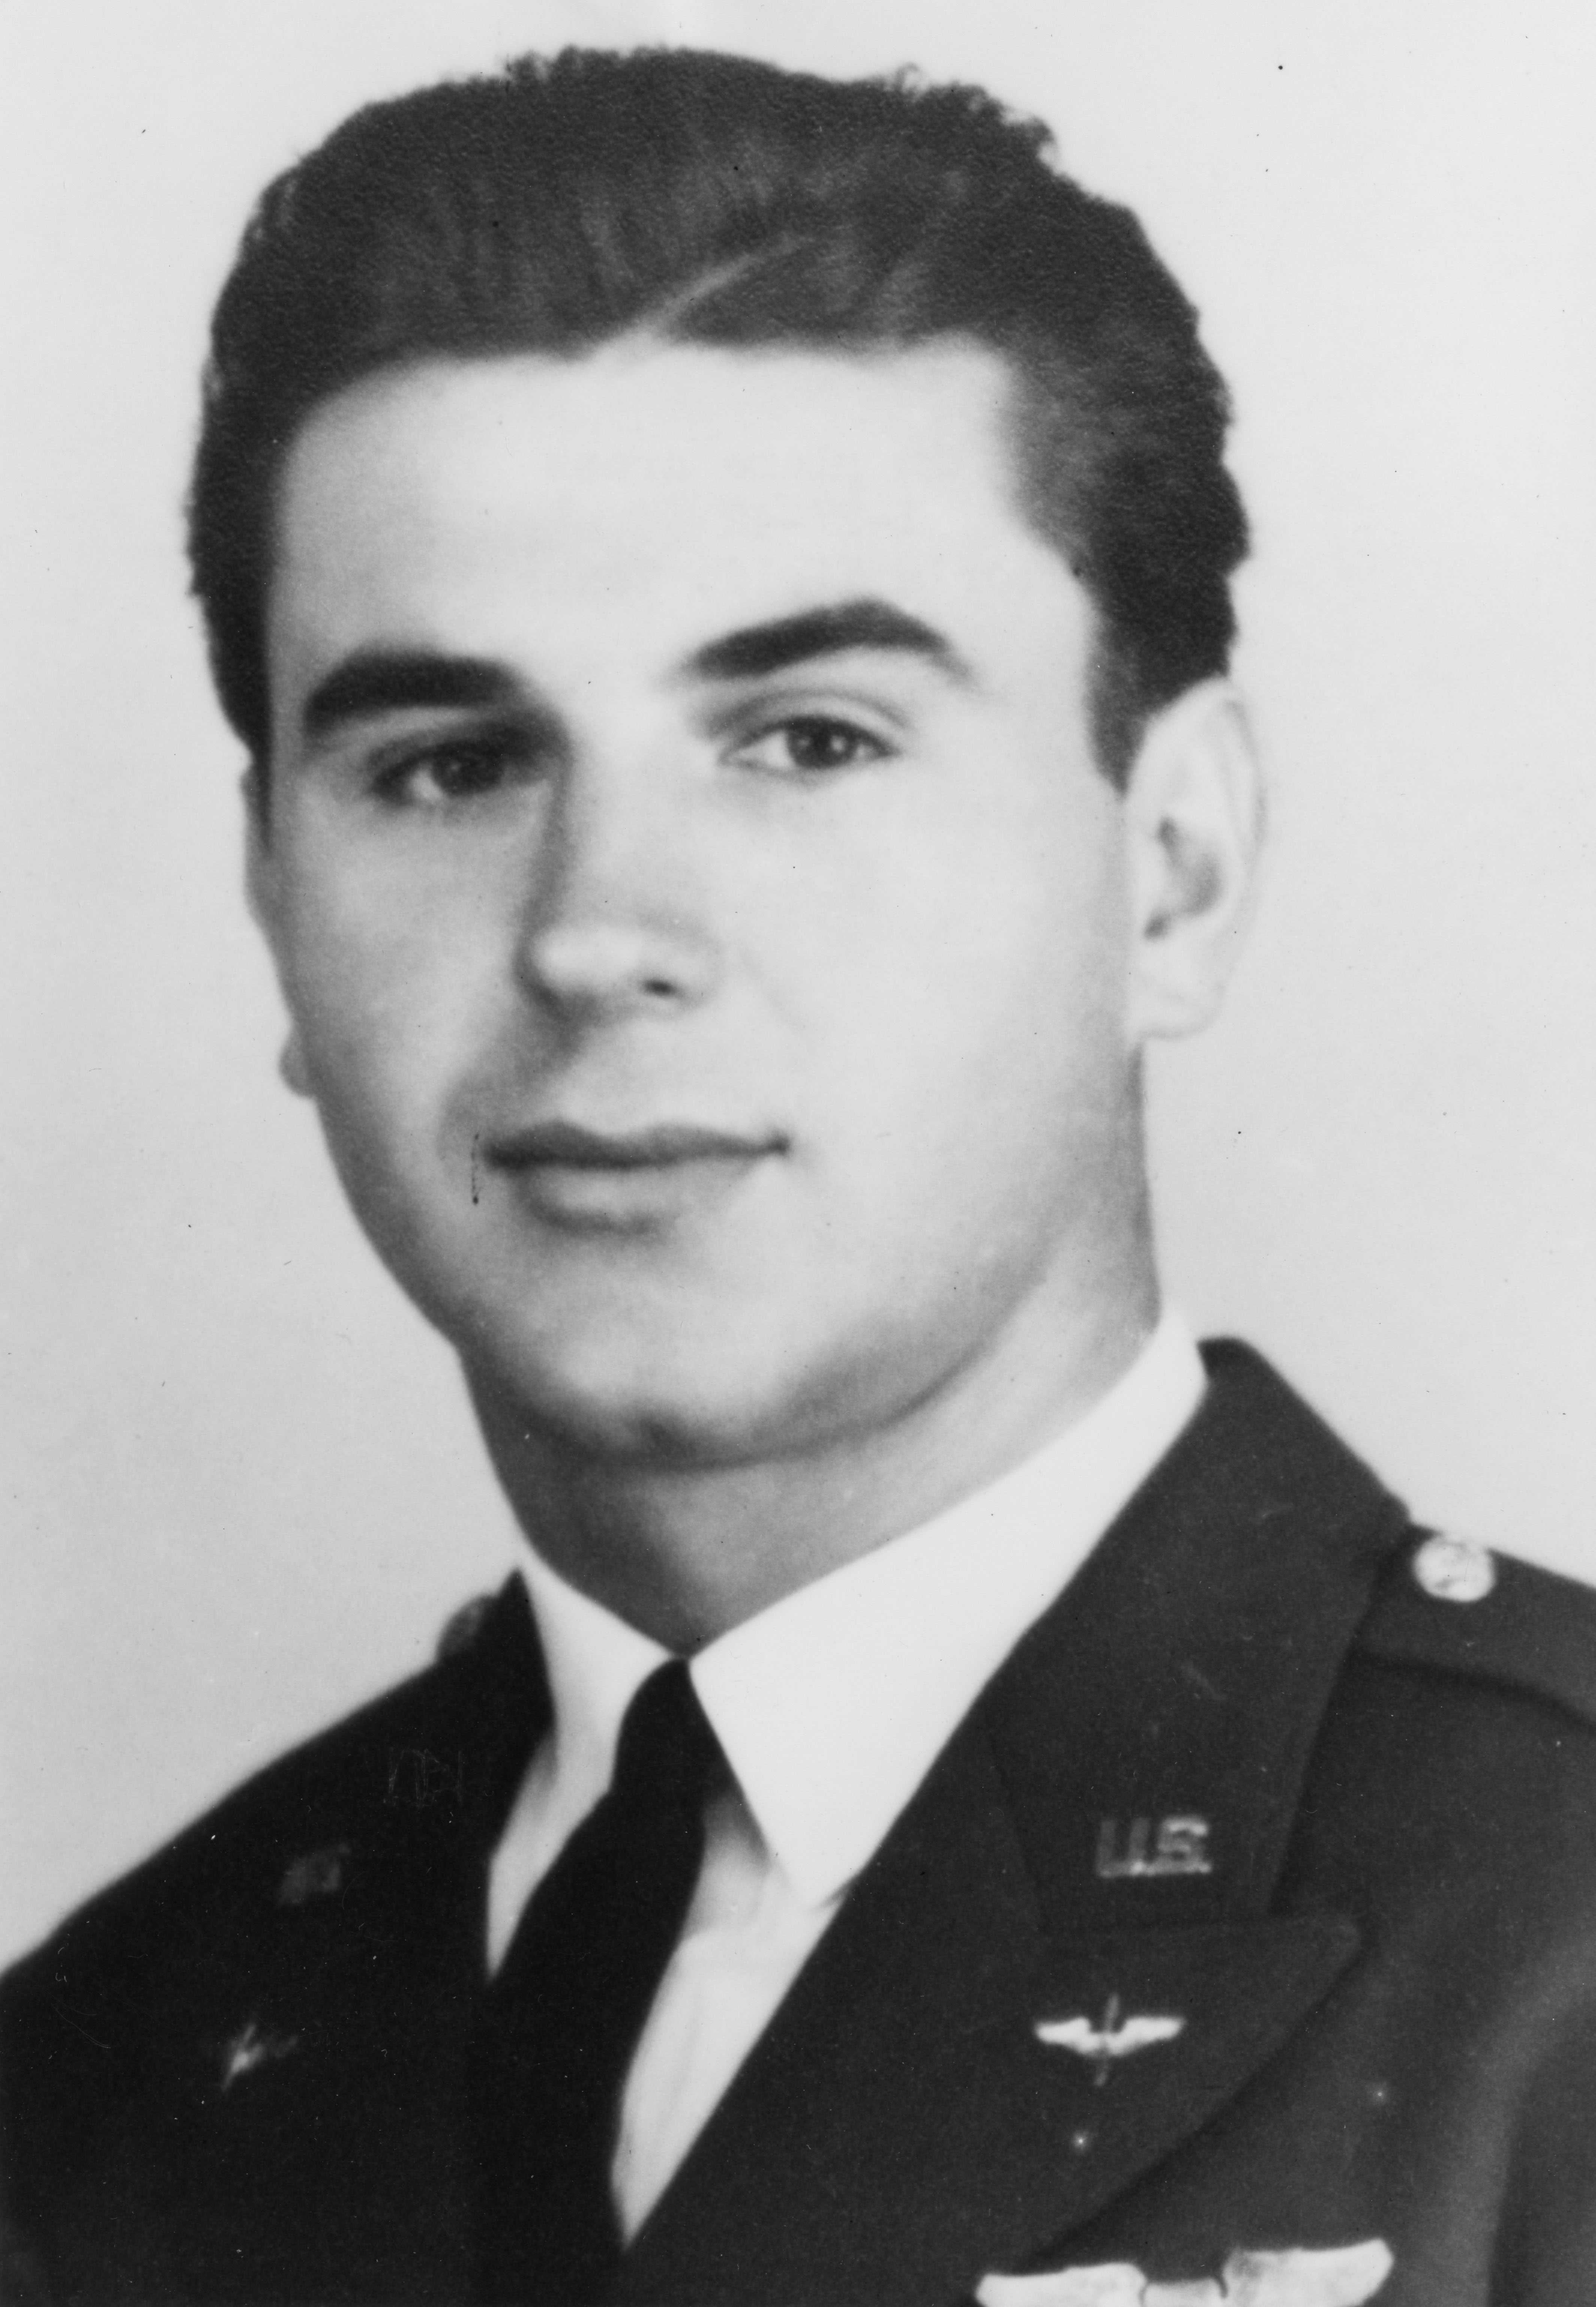 Lt. Gordon O. Kibbe, 1940